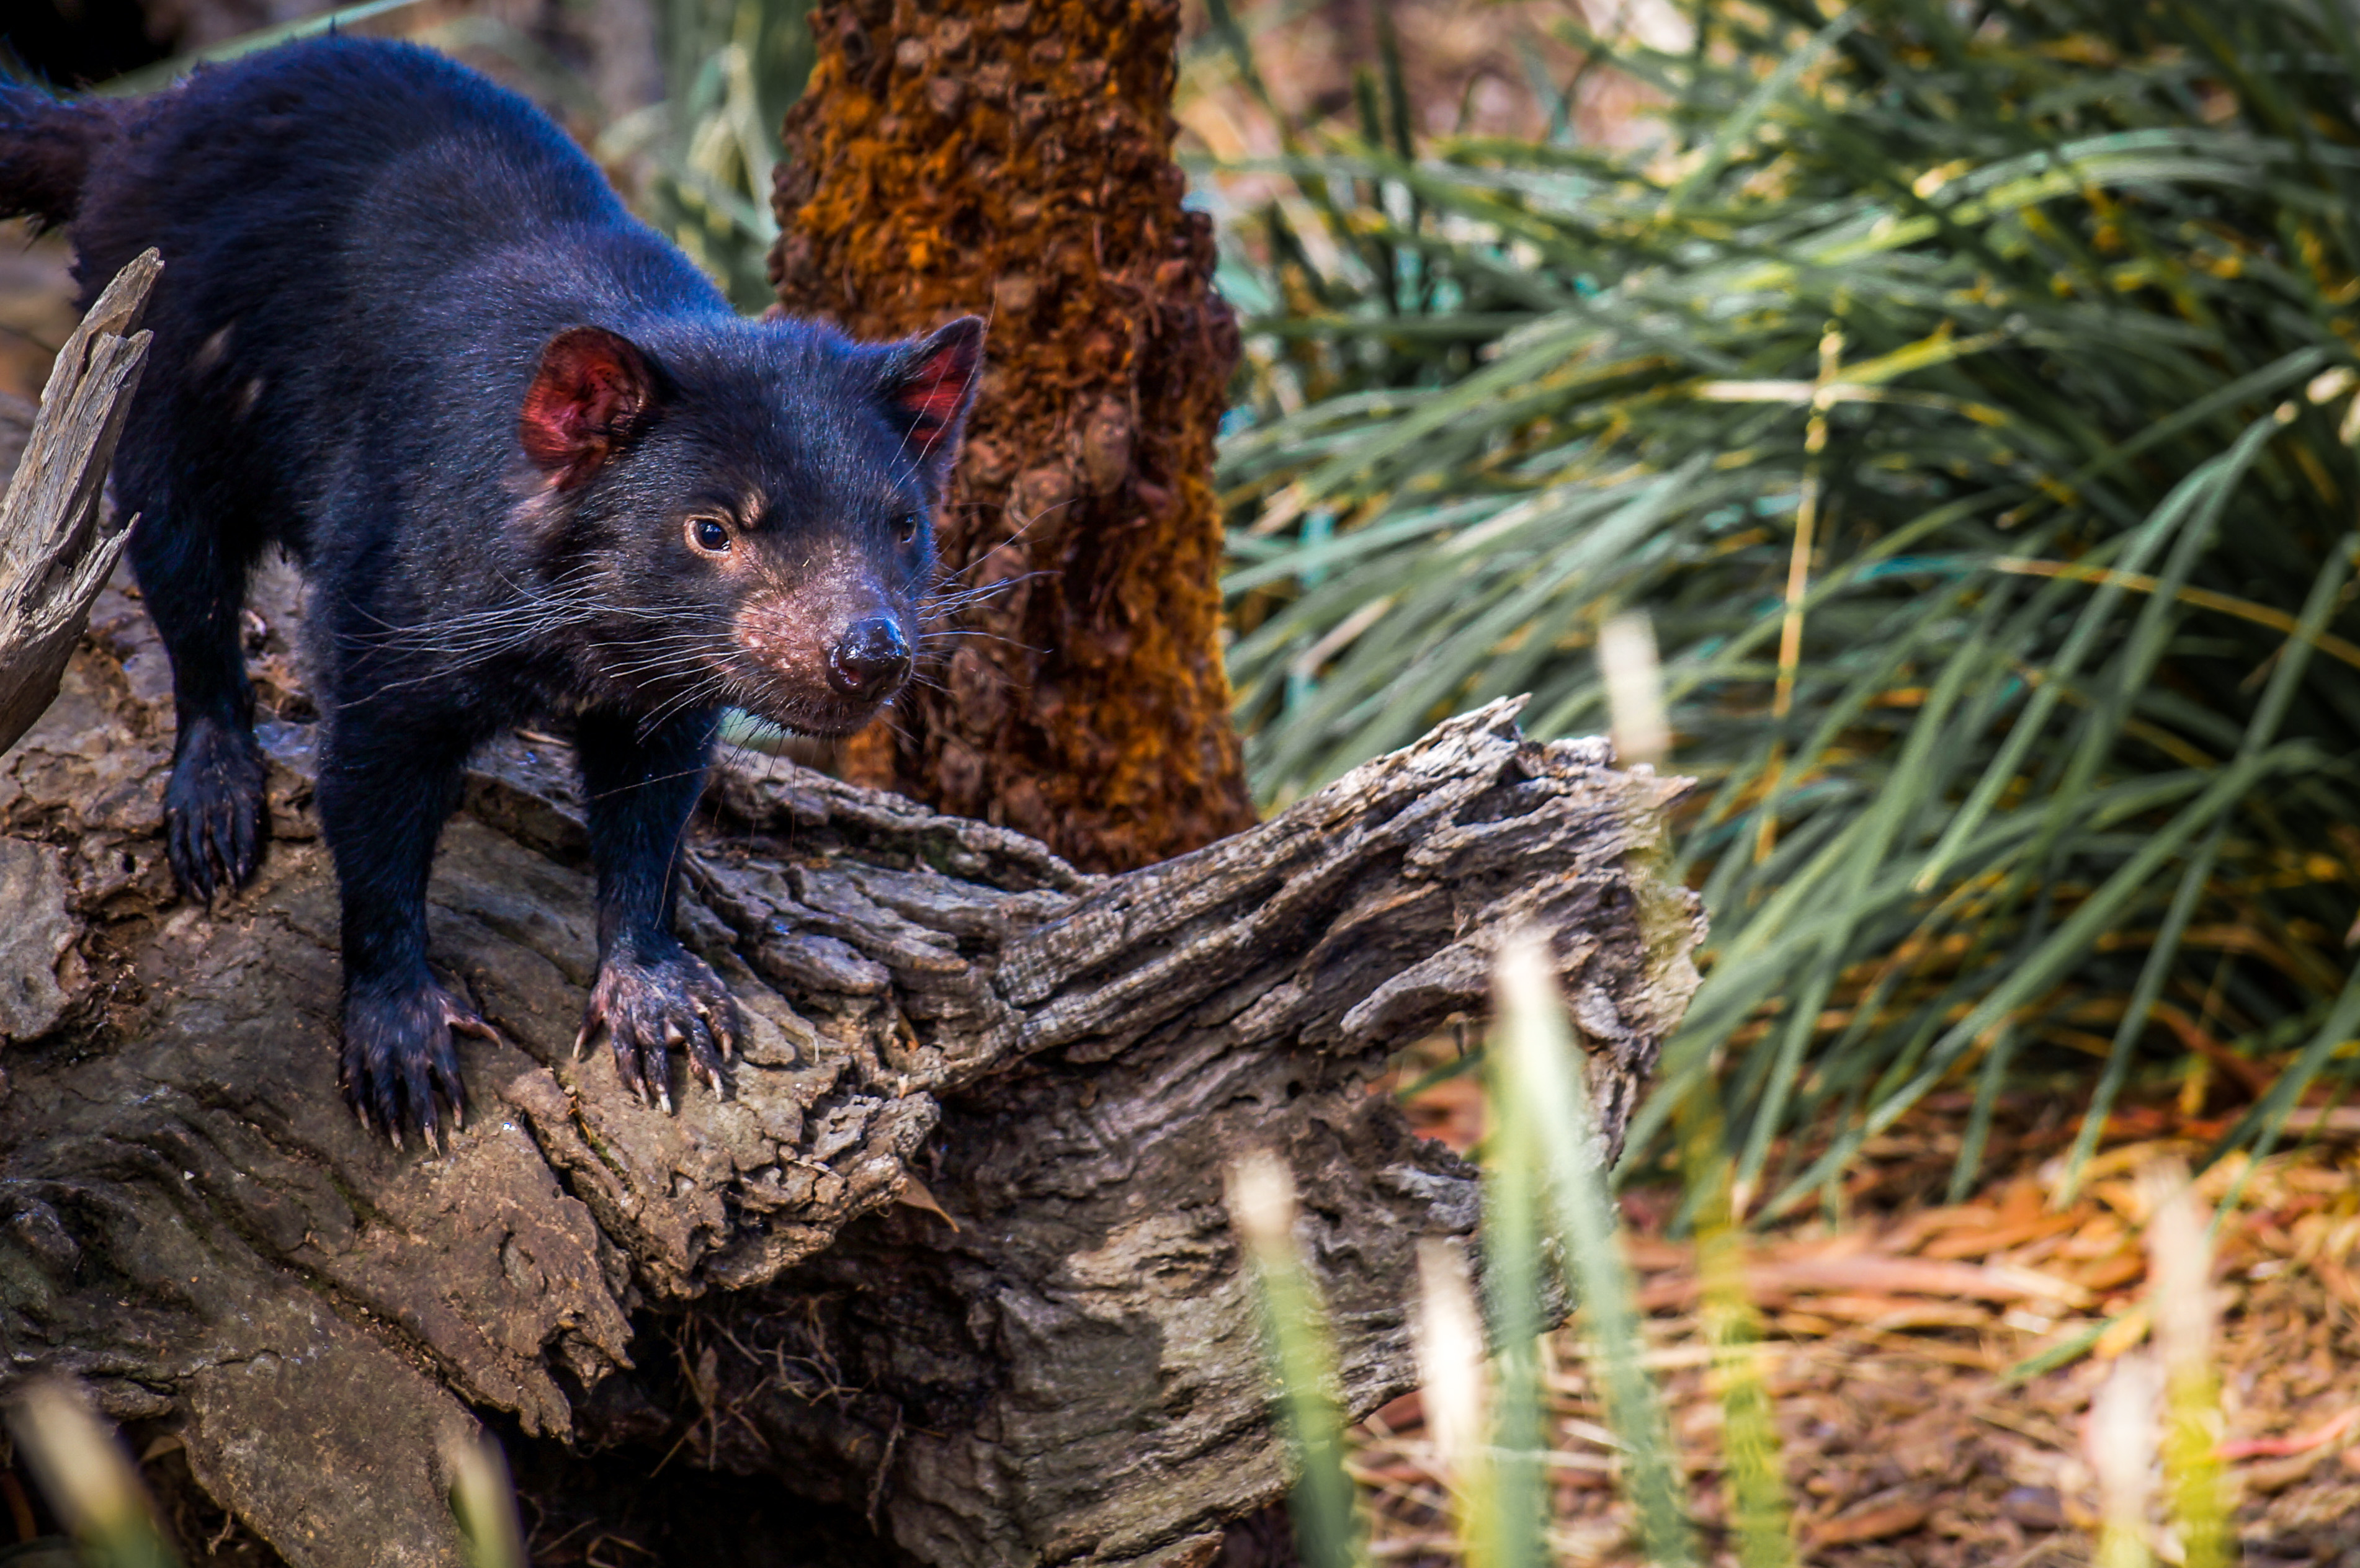 Tasmania -Tasmanian devil